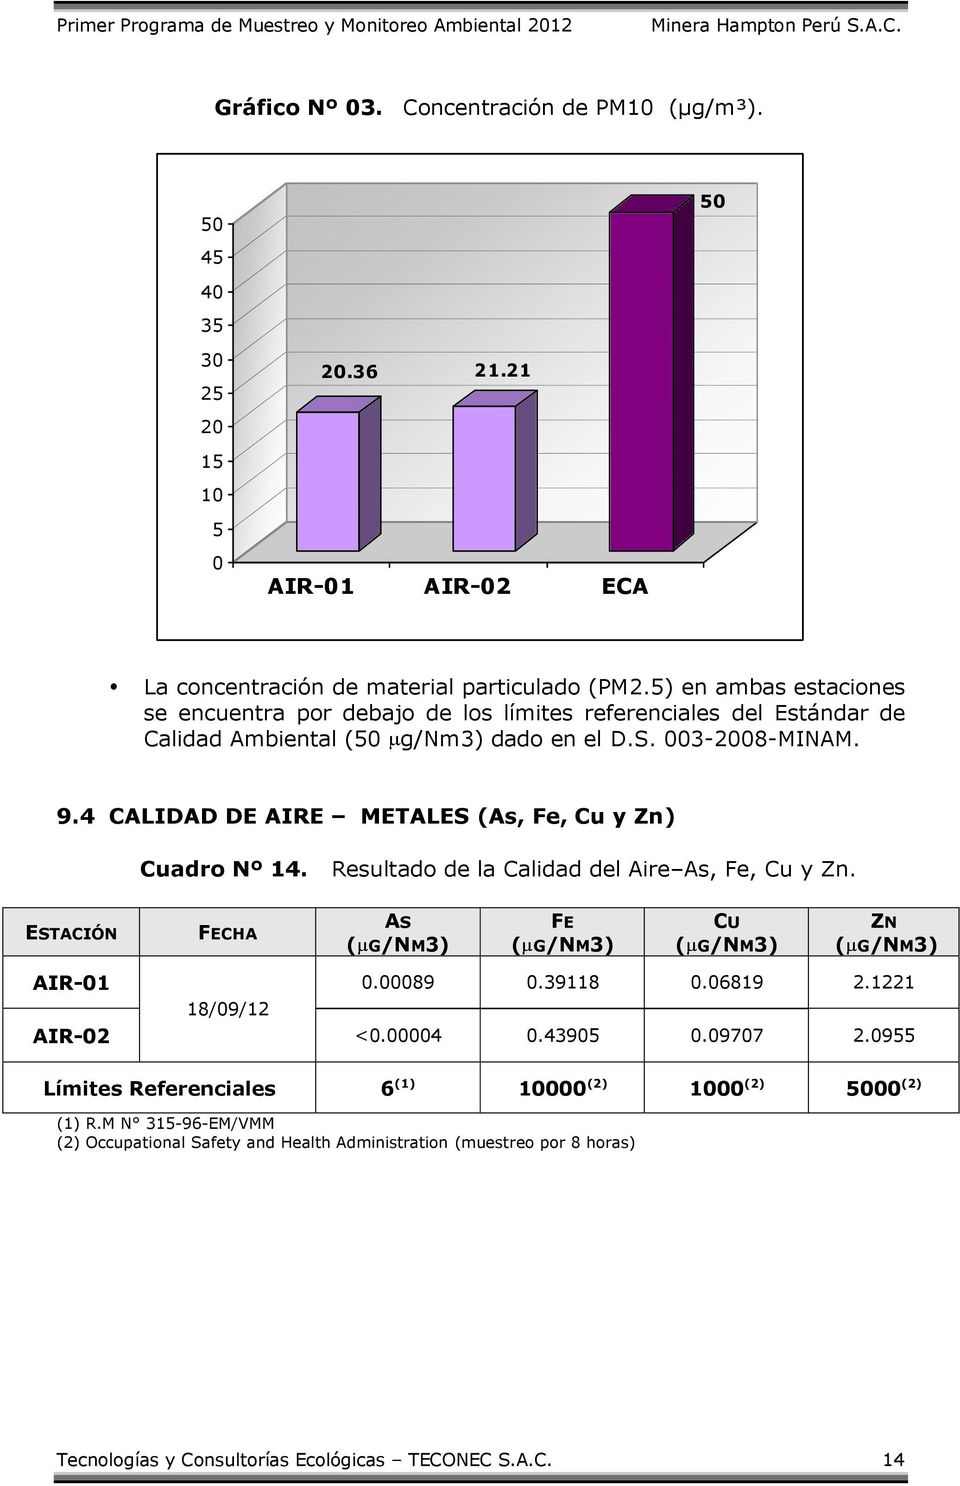 4 CALIDAD DE AIRE METALES (As, Fe, Cu y Zn) Cuadro Nº 14. Resultado de la Calidad del Aire As, Fe, Cu y Zn. ESTACIÓN FECHA AS ( G/NM3) FE ( G/NM3) CU ( G/NM3) ZN ( G/NM3) AIR-01 0.00089 0.